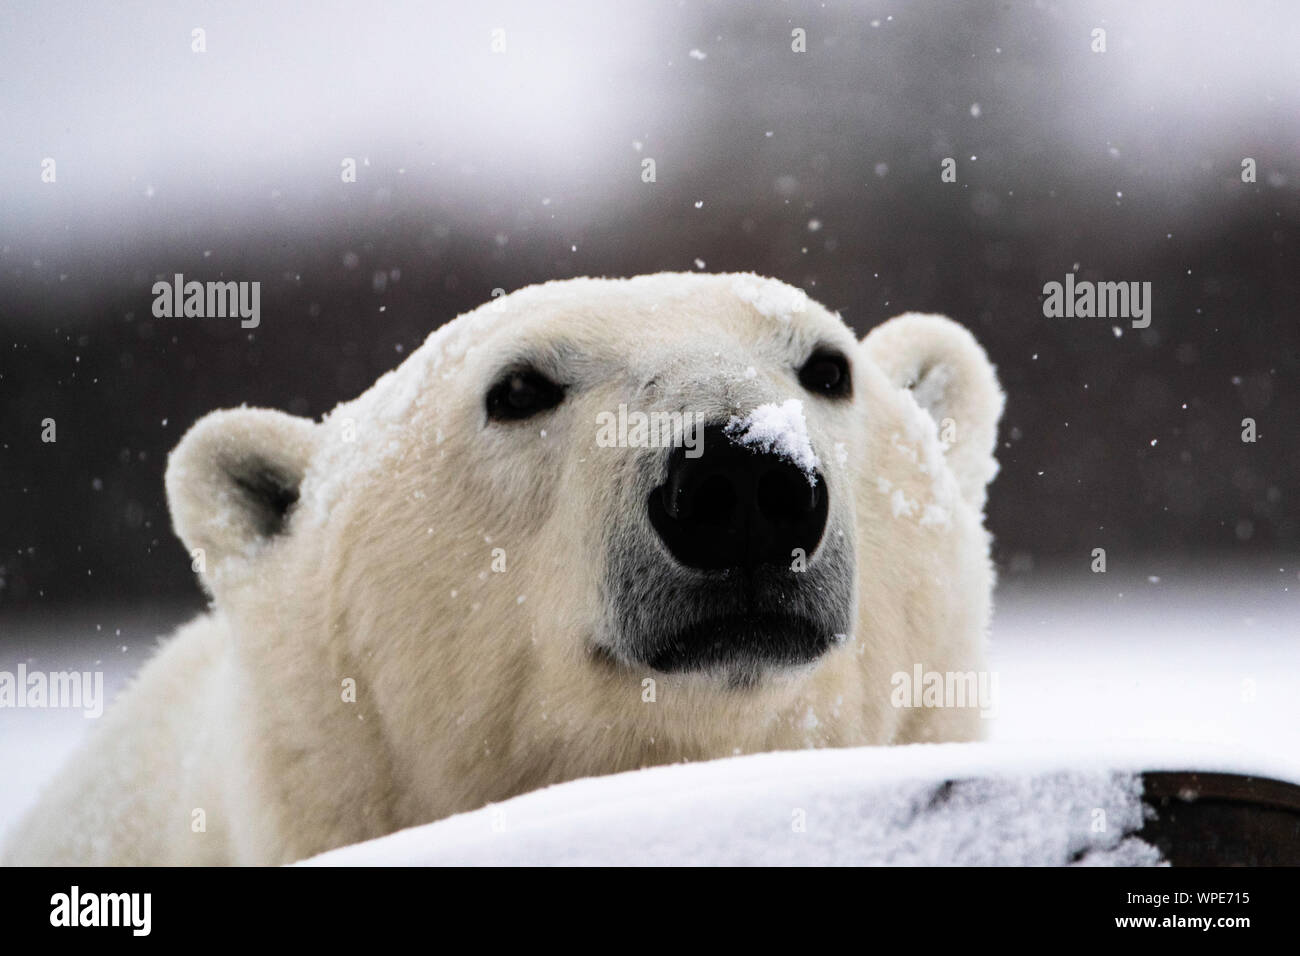 Orso polare con il suo naso nella caduta di neve, Nanuk Lodge, a ovest della Baia di Hudson, Churchill, Manitoba, Canada Foto Stock